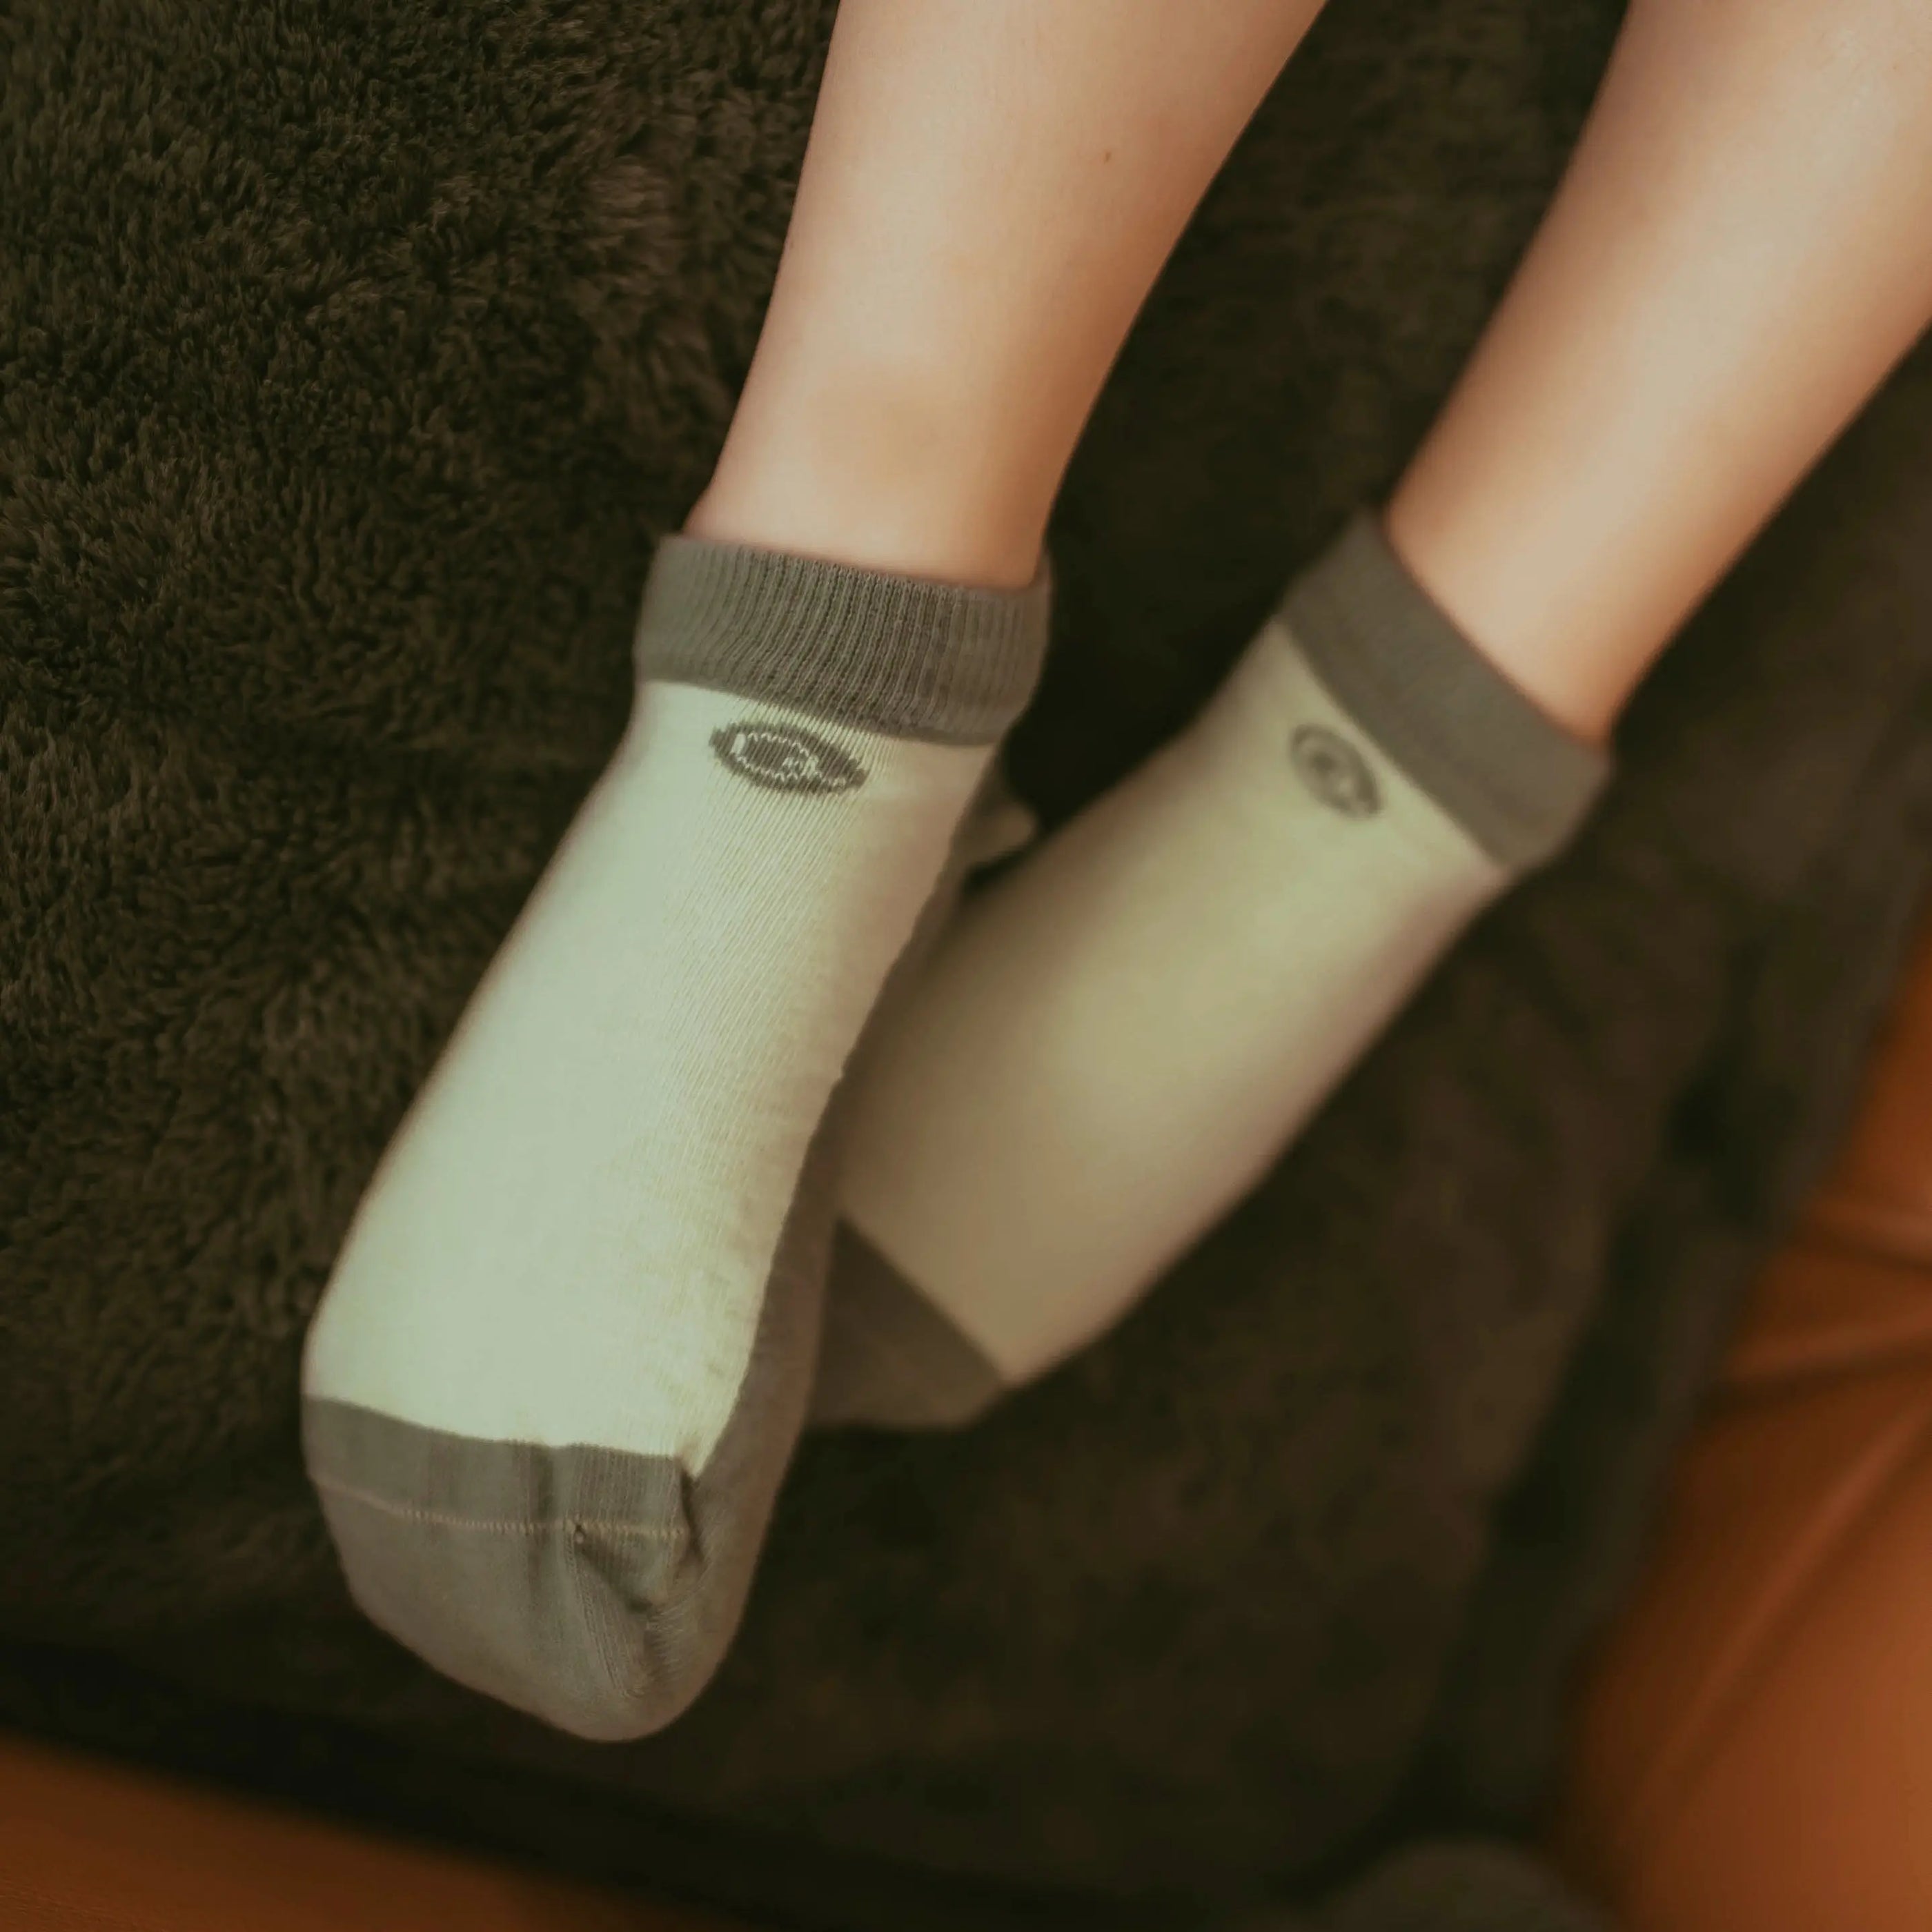 Kids Socks – 100% Polyester